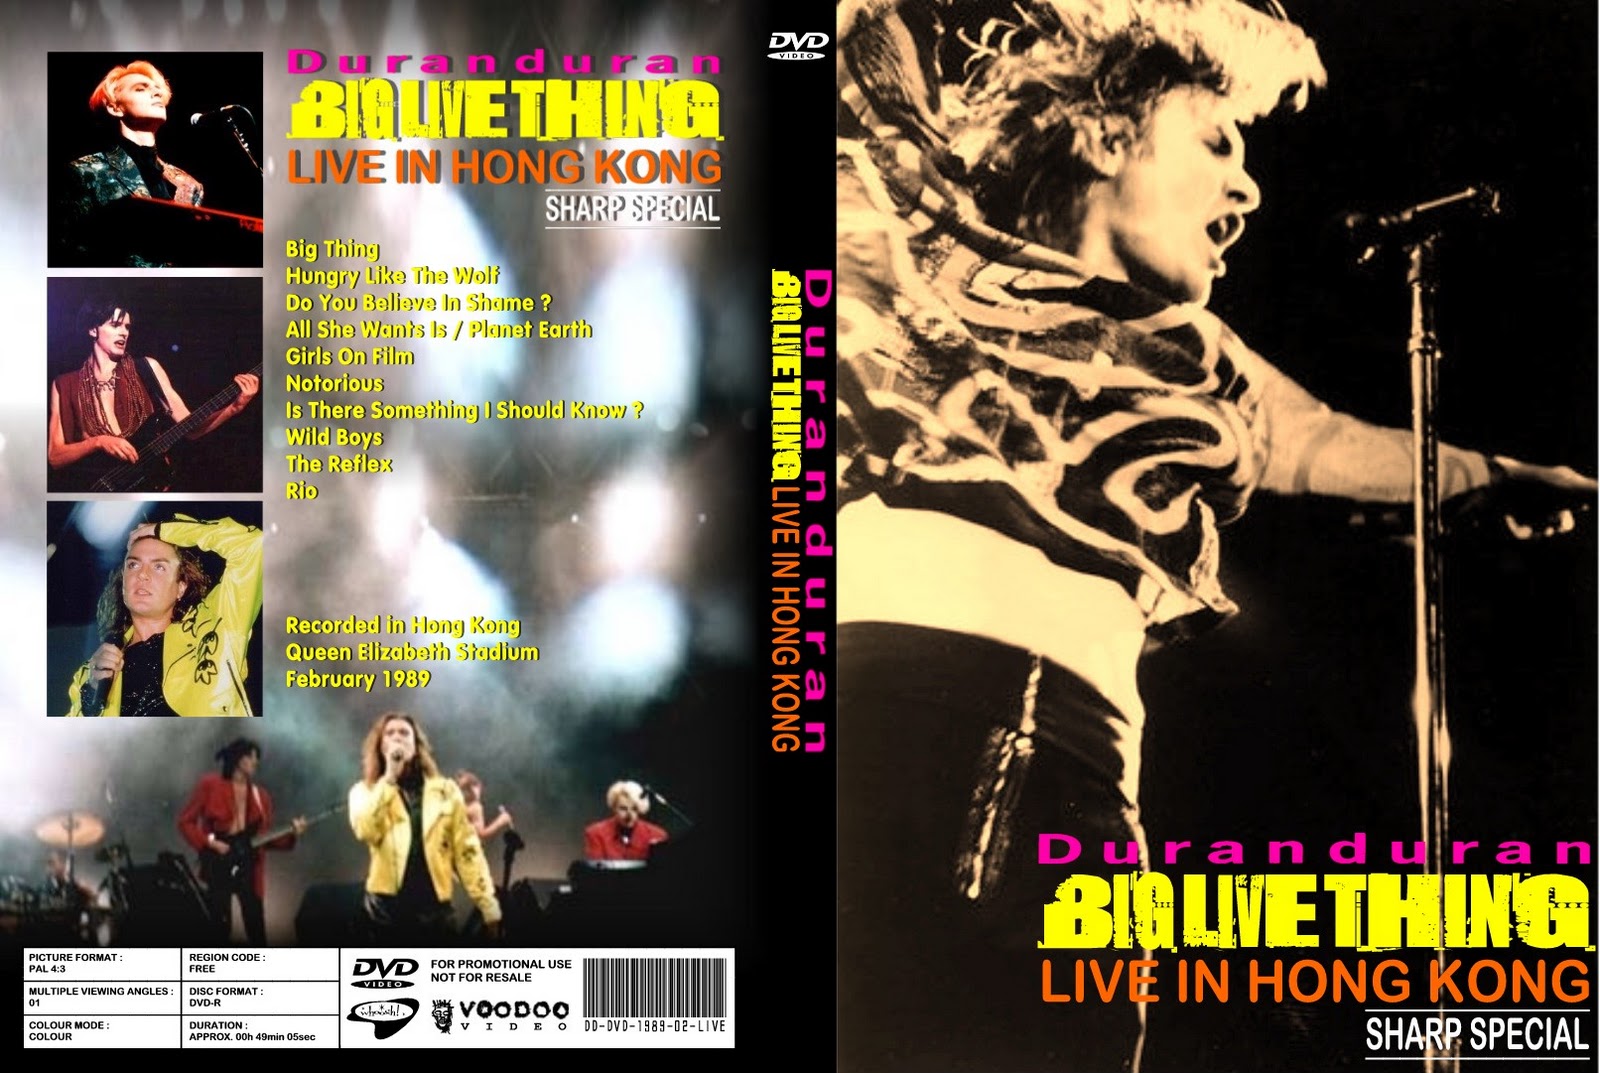 http://3.bp.blogspot.com/-1mN0F9JYOGk/TuWUSWpt0UI/AAAAAAAAE7Y/z7Jwv8WwHBk/s1600/DVD+Cover+-+Duran+Duran+-+1989-02-24+-+Hong+Kong.jpg